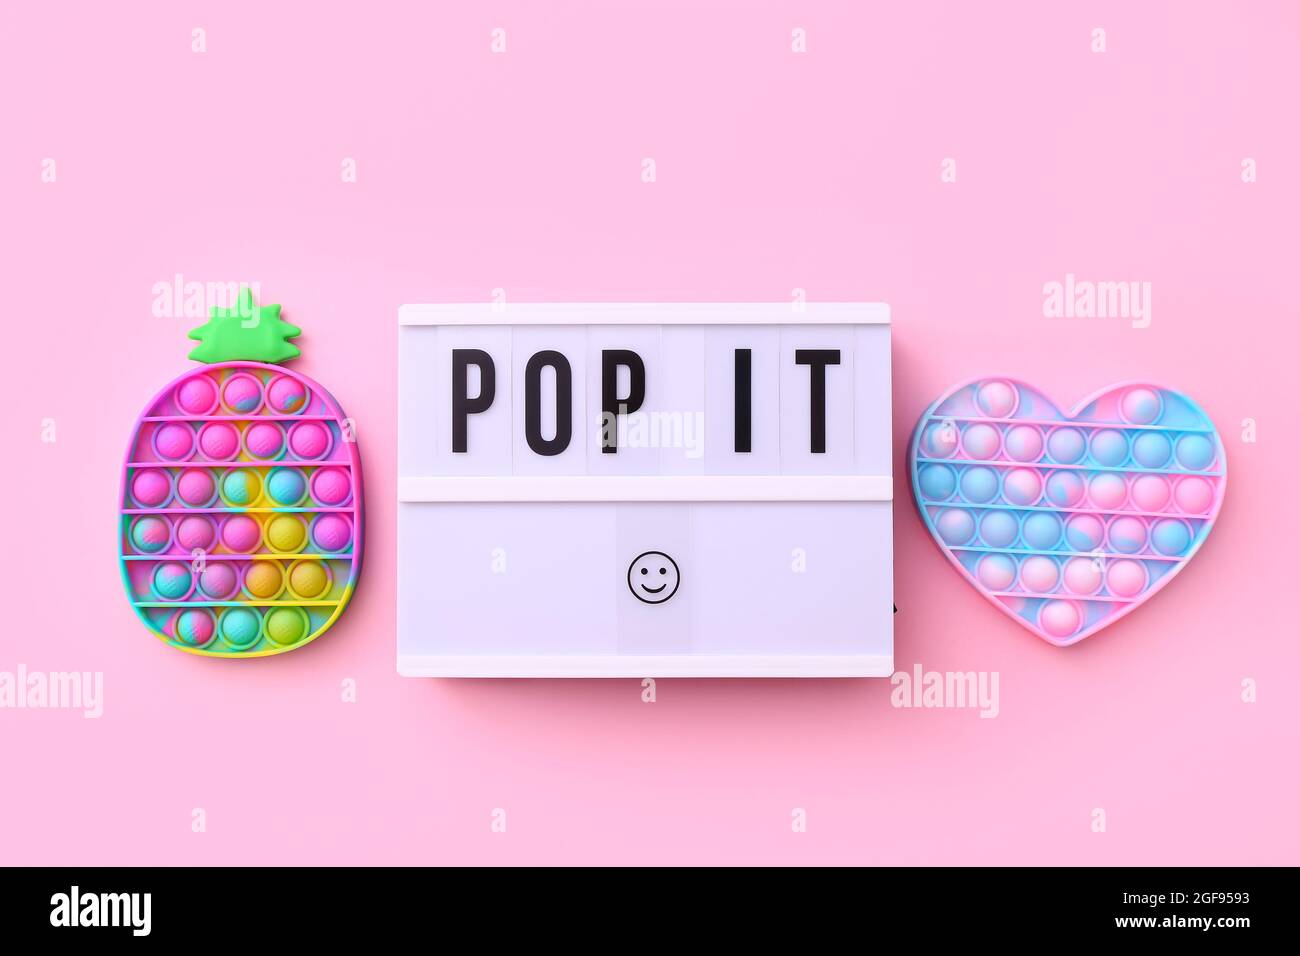 Popular de moda silicona colorido anti estrés Pop It juguete para niños sobre fondo rosa con texto Pop It en caja de luz. Foto de stock